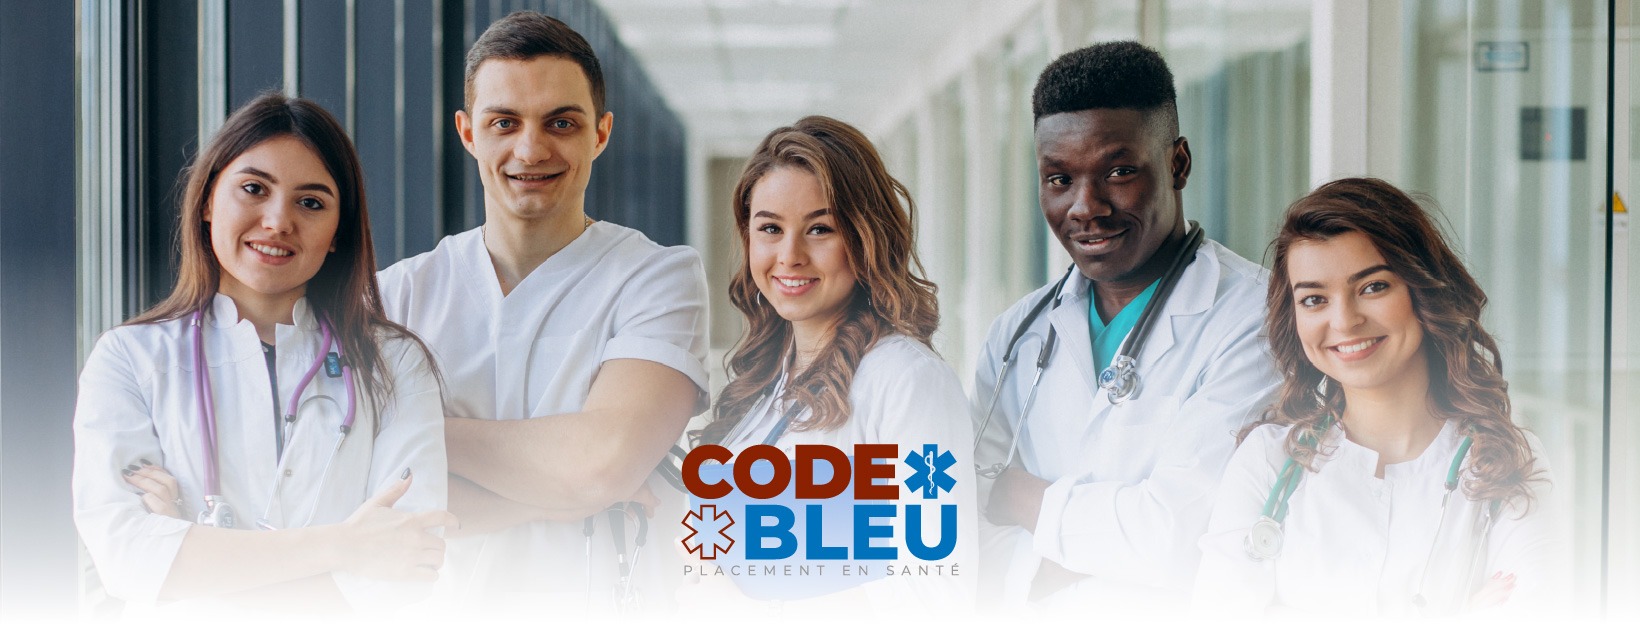 Conditions de travail de Code Bleu Placement en Santé